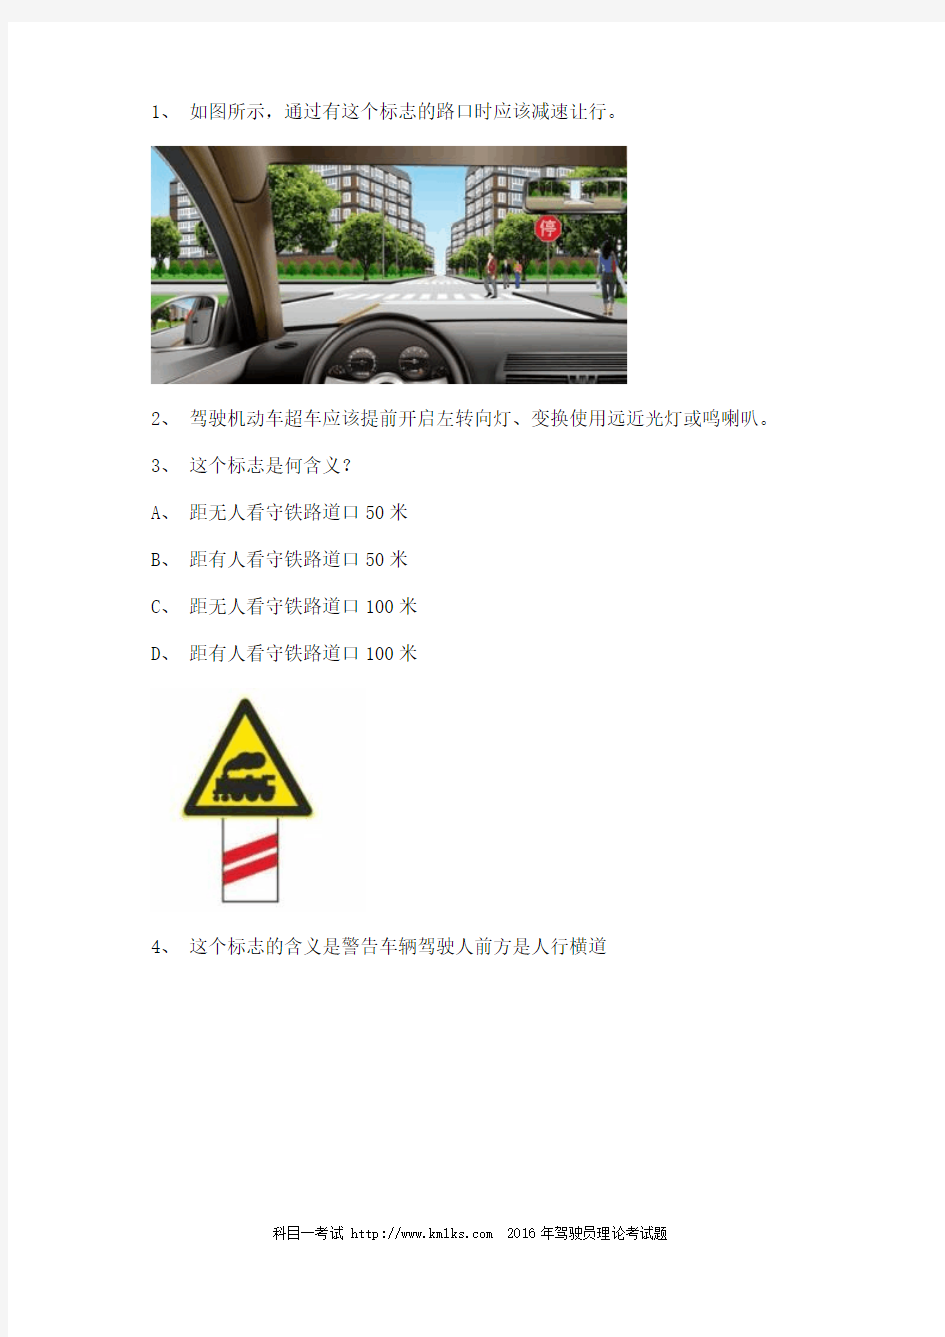 2012丽江市驾校一点通考试客车试题